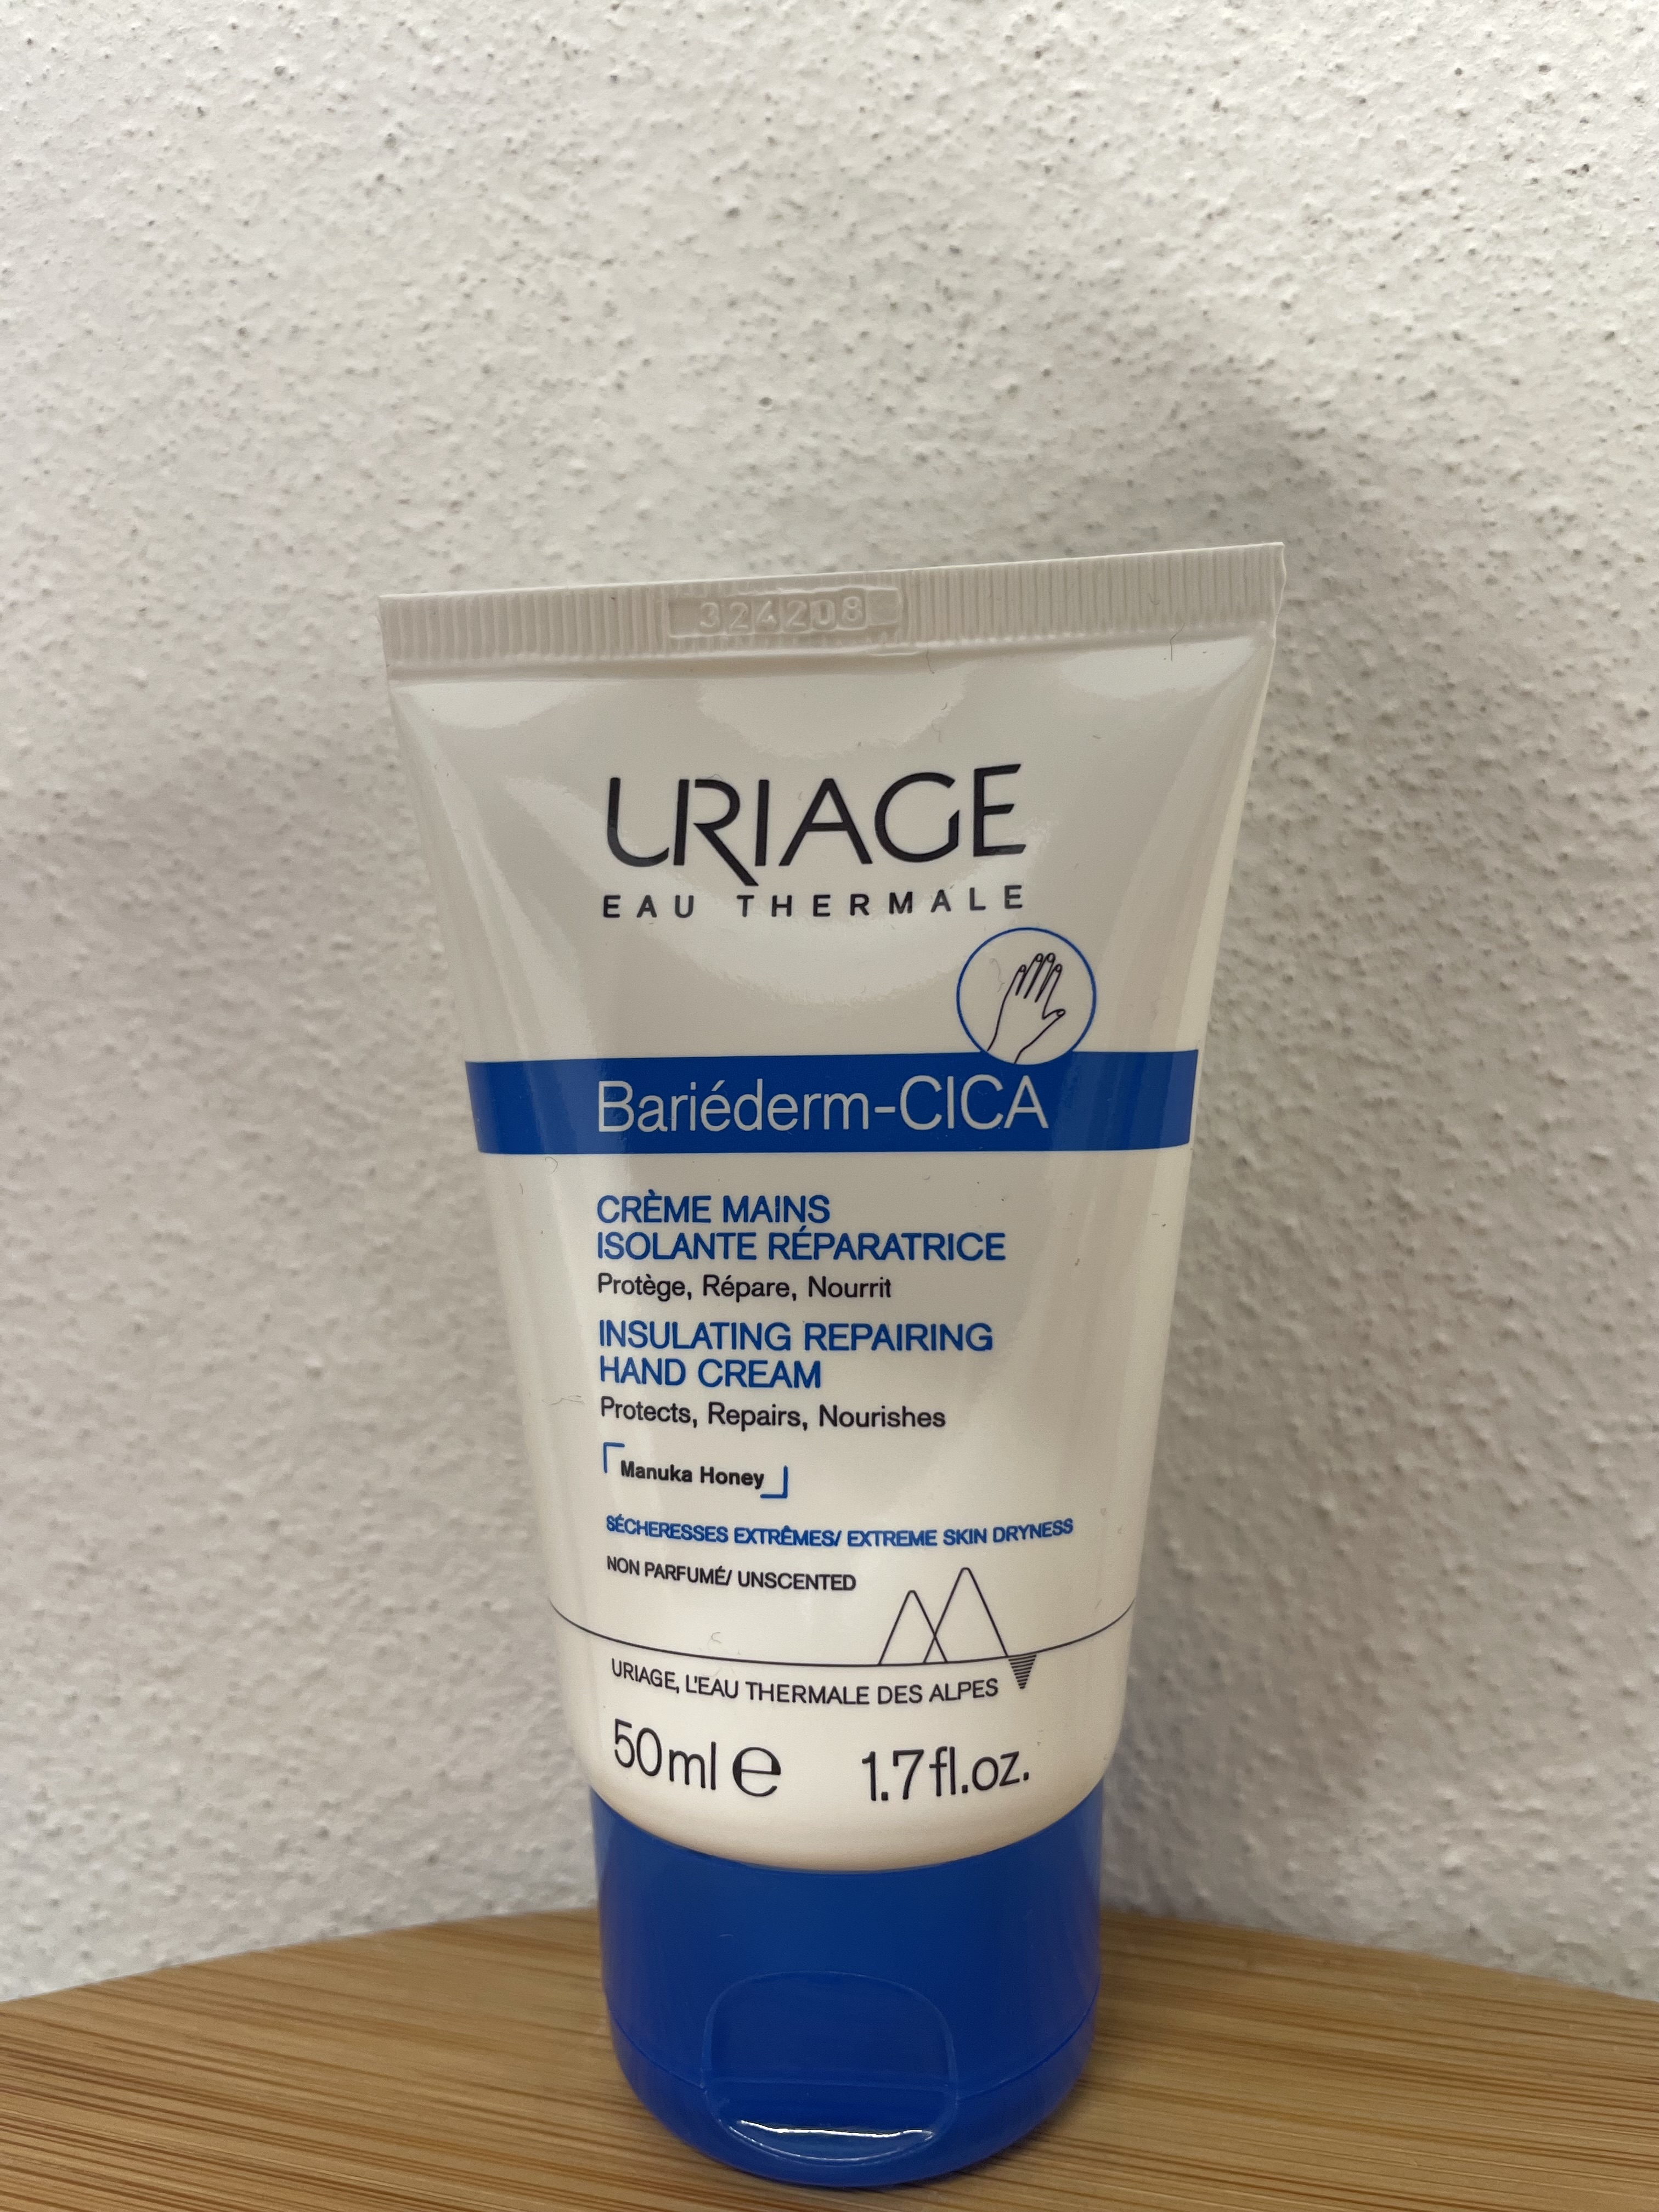 Uriage: Bariederm Insulating Repairing Hand Cream